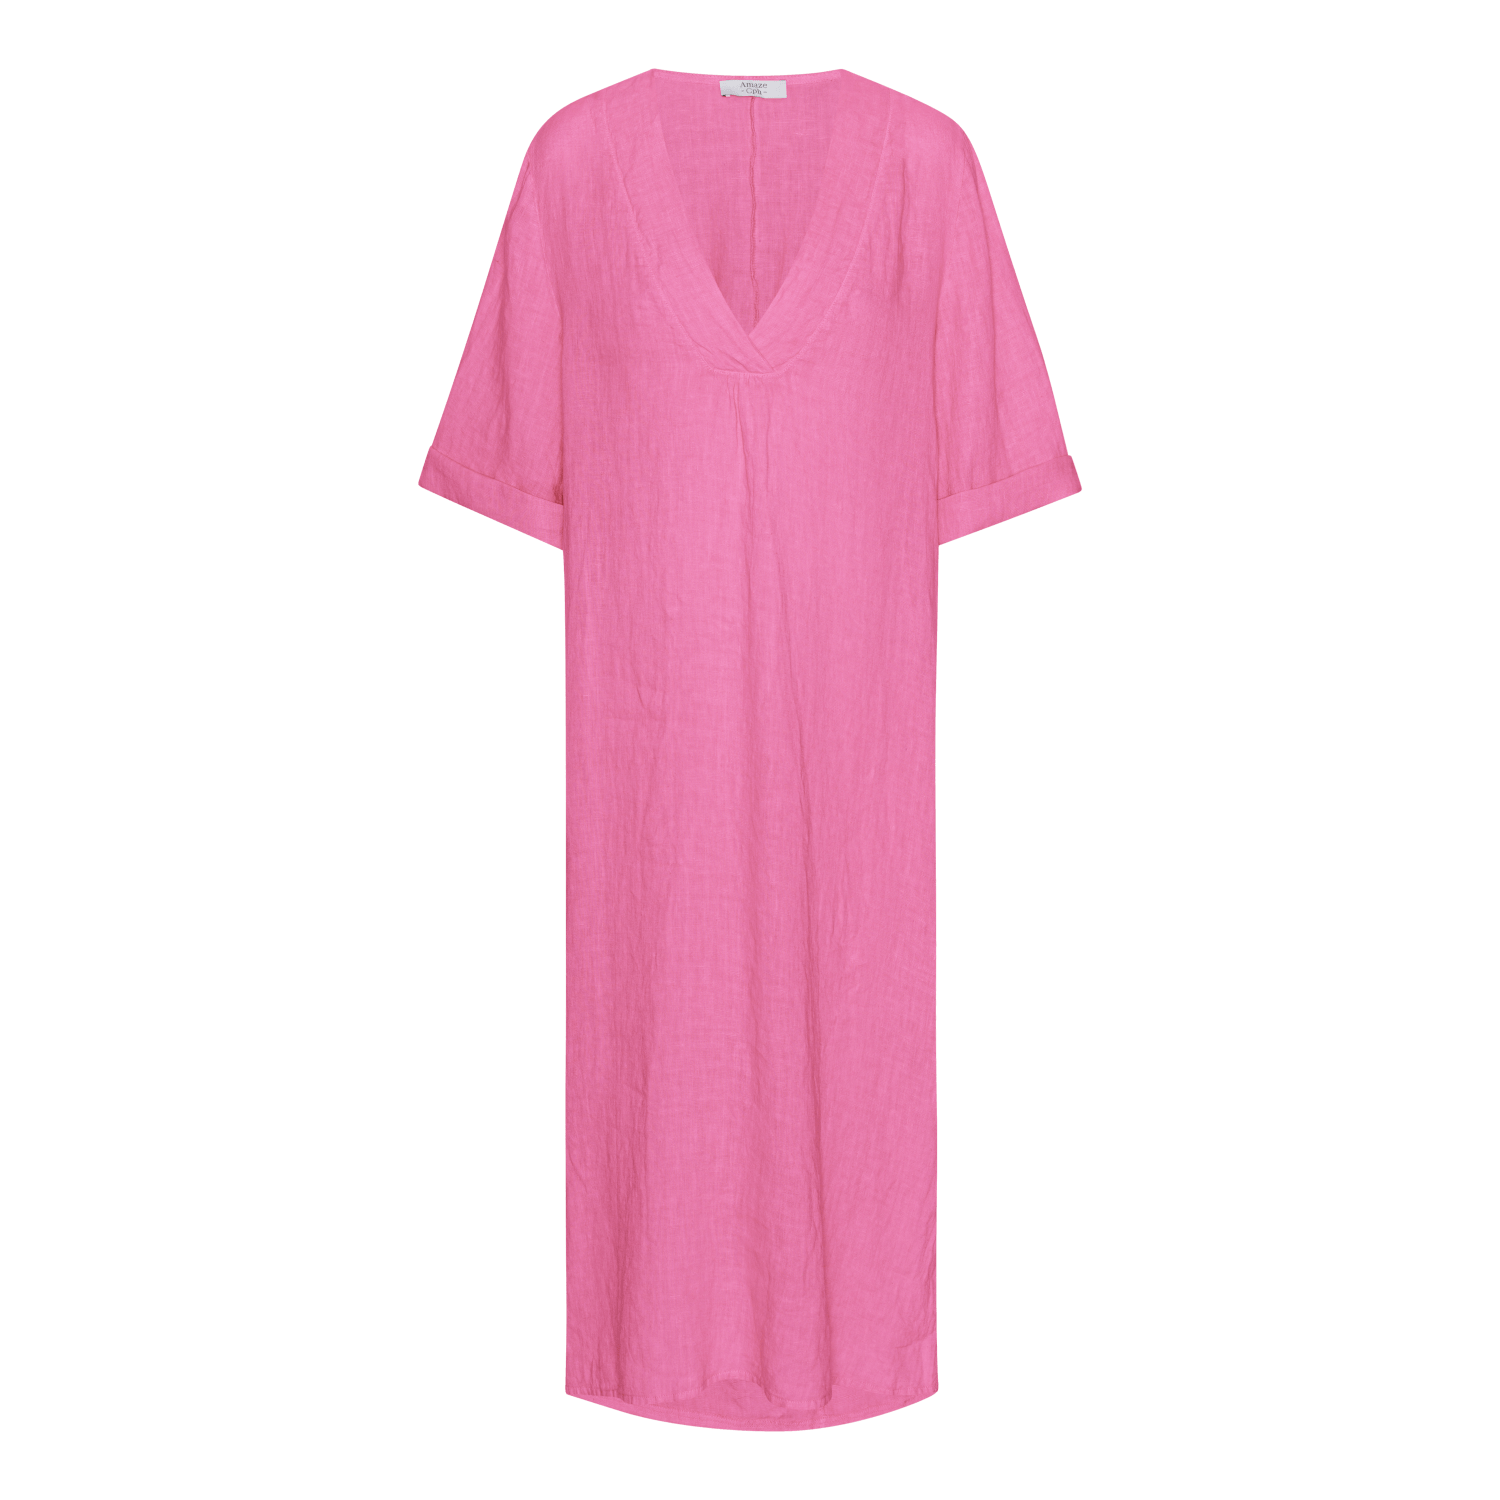 Linen Dress - Pink - Amaze Cph - Pink - S/M